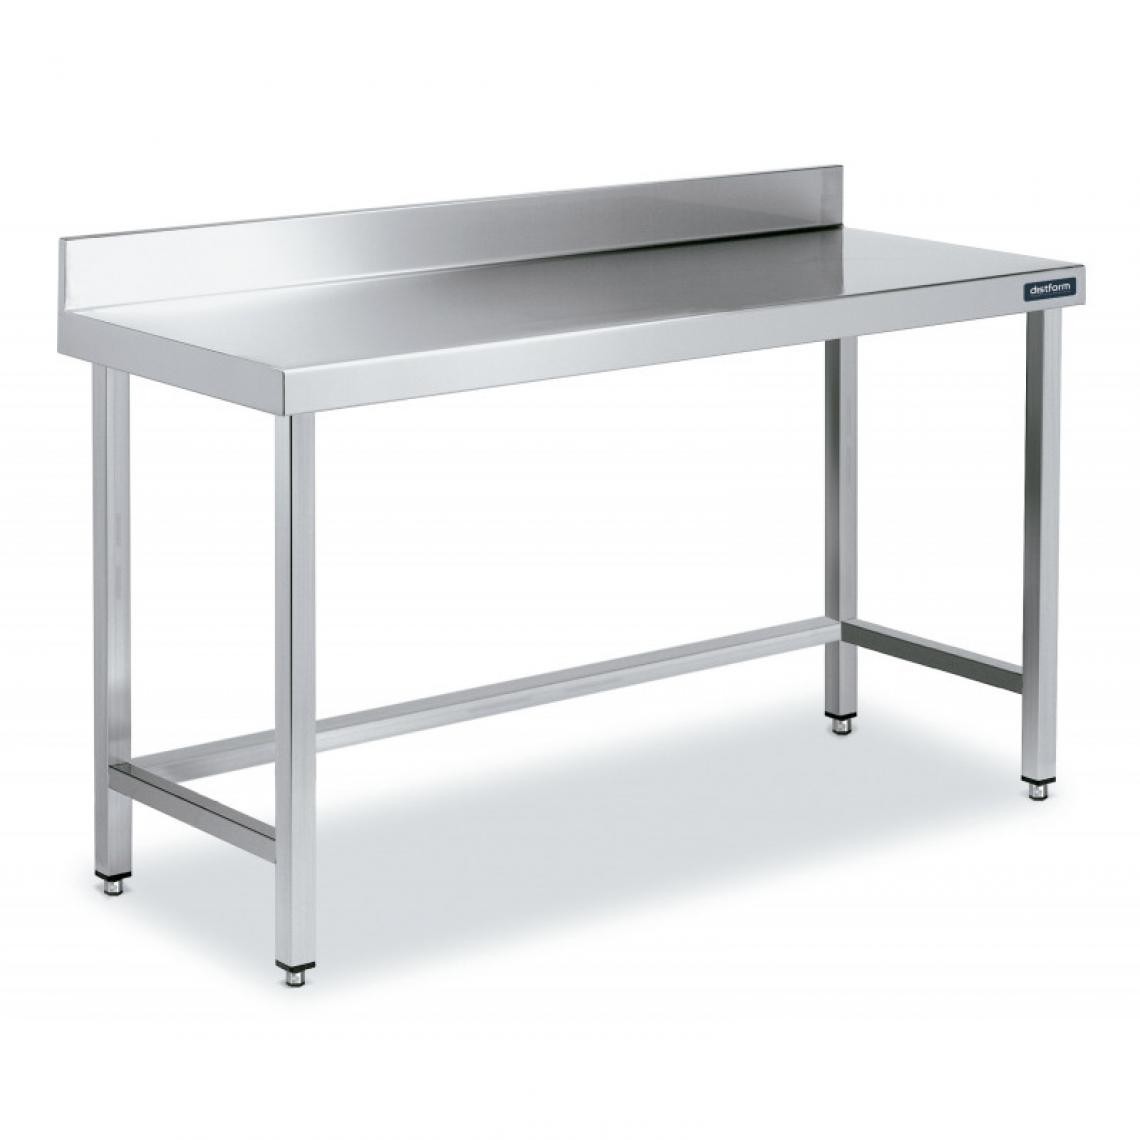 DISTFORM - Table Adossée en Inox avec Renforts Profondeur 700 mm - Distform - Acier inoxydable900x700 - Tables à manger